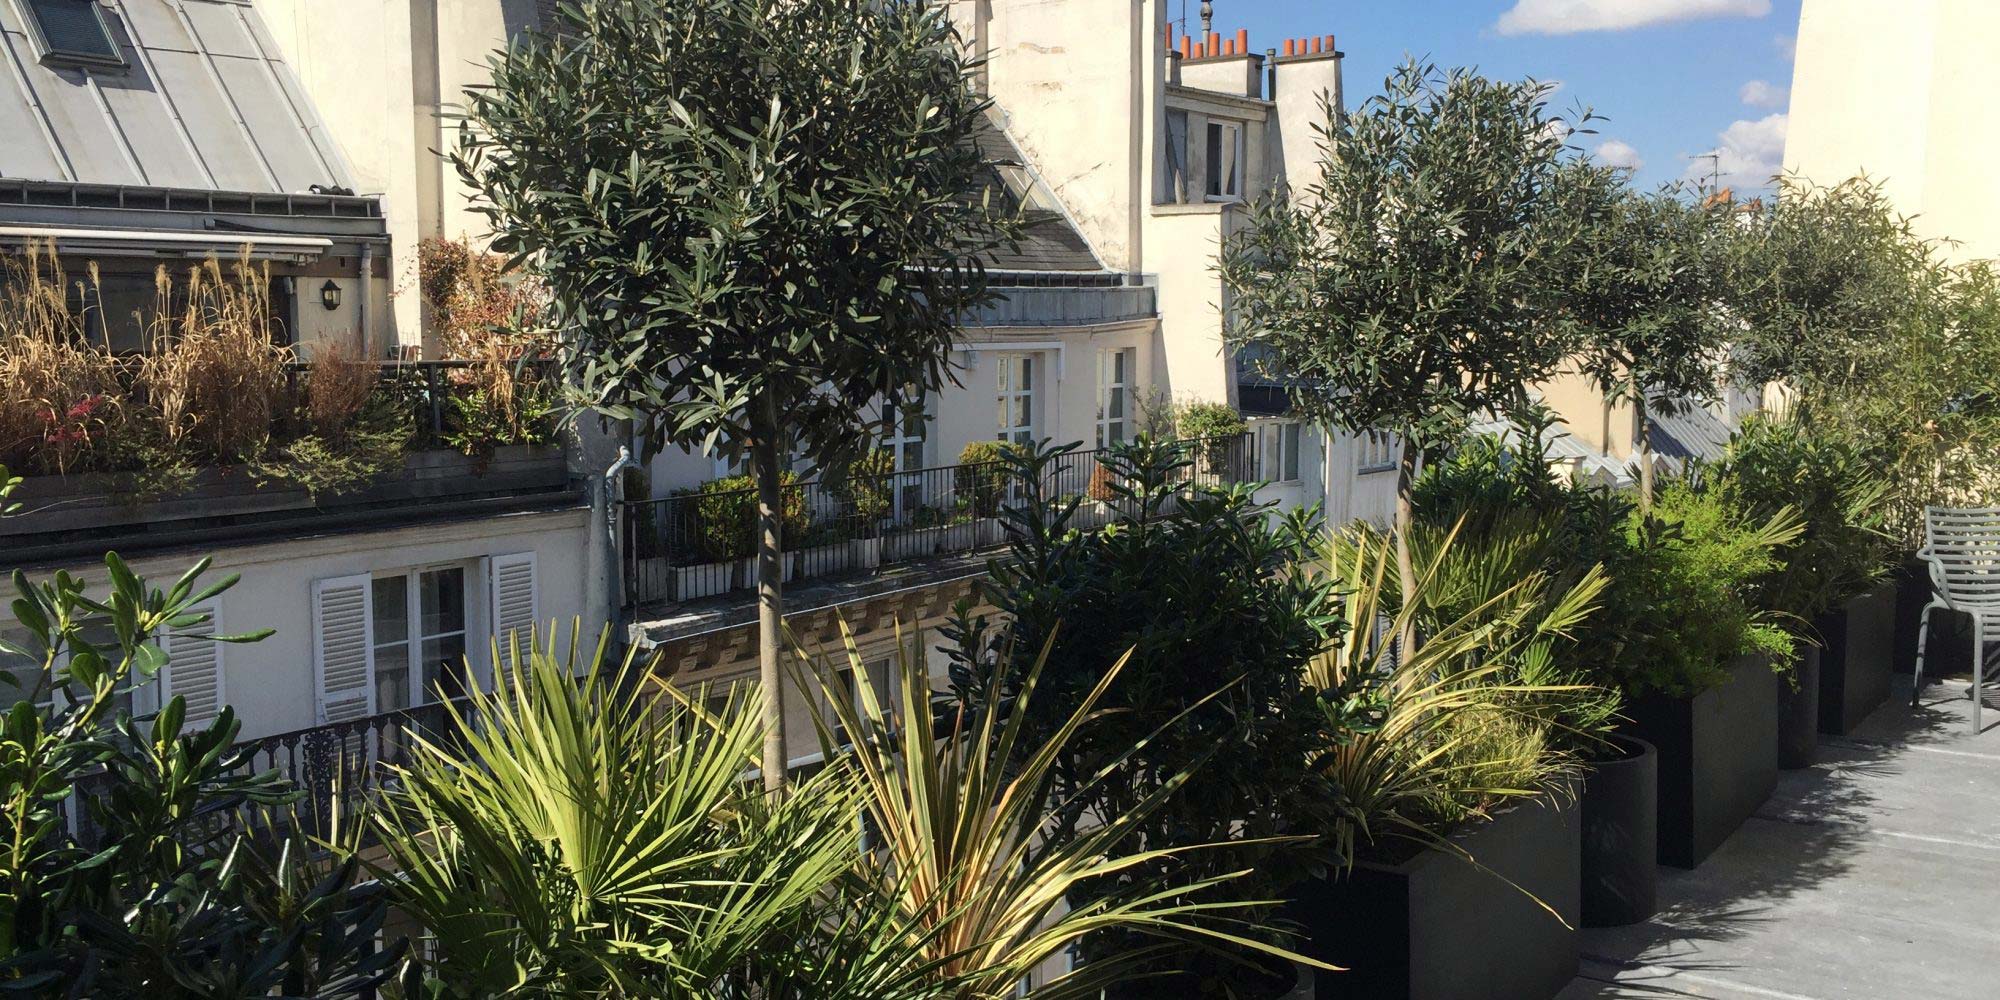 Planter du muguet sur son balcon à Paris